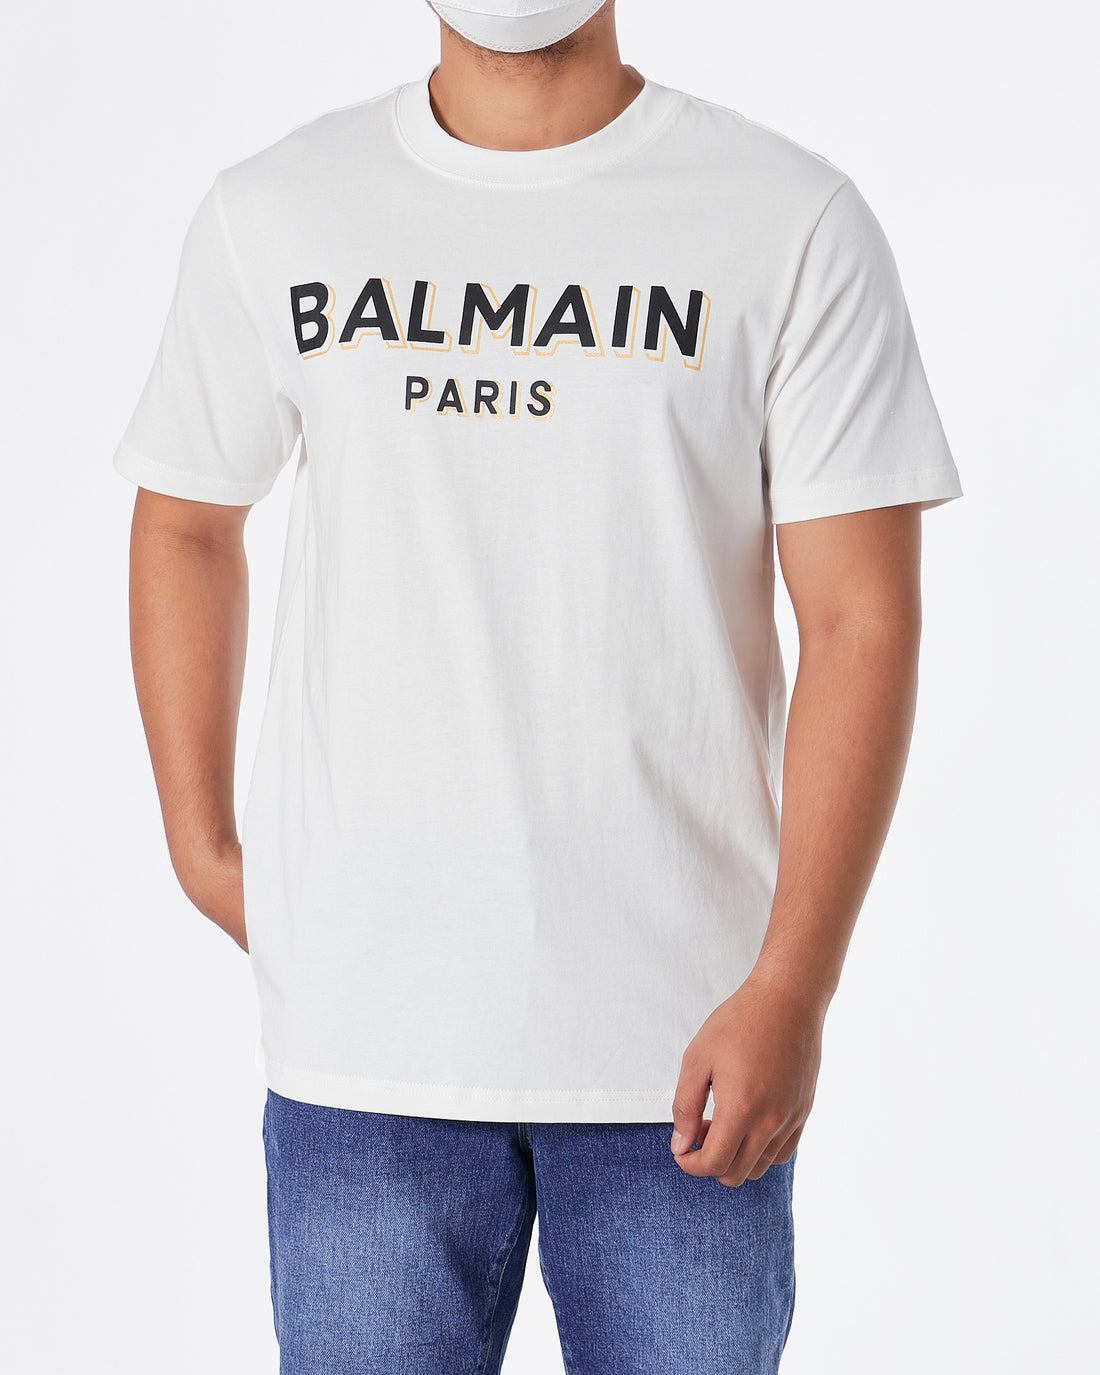 BAM Paris Logo Printed Men White T-Shirt 22.50